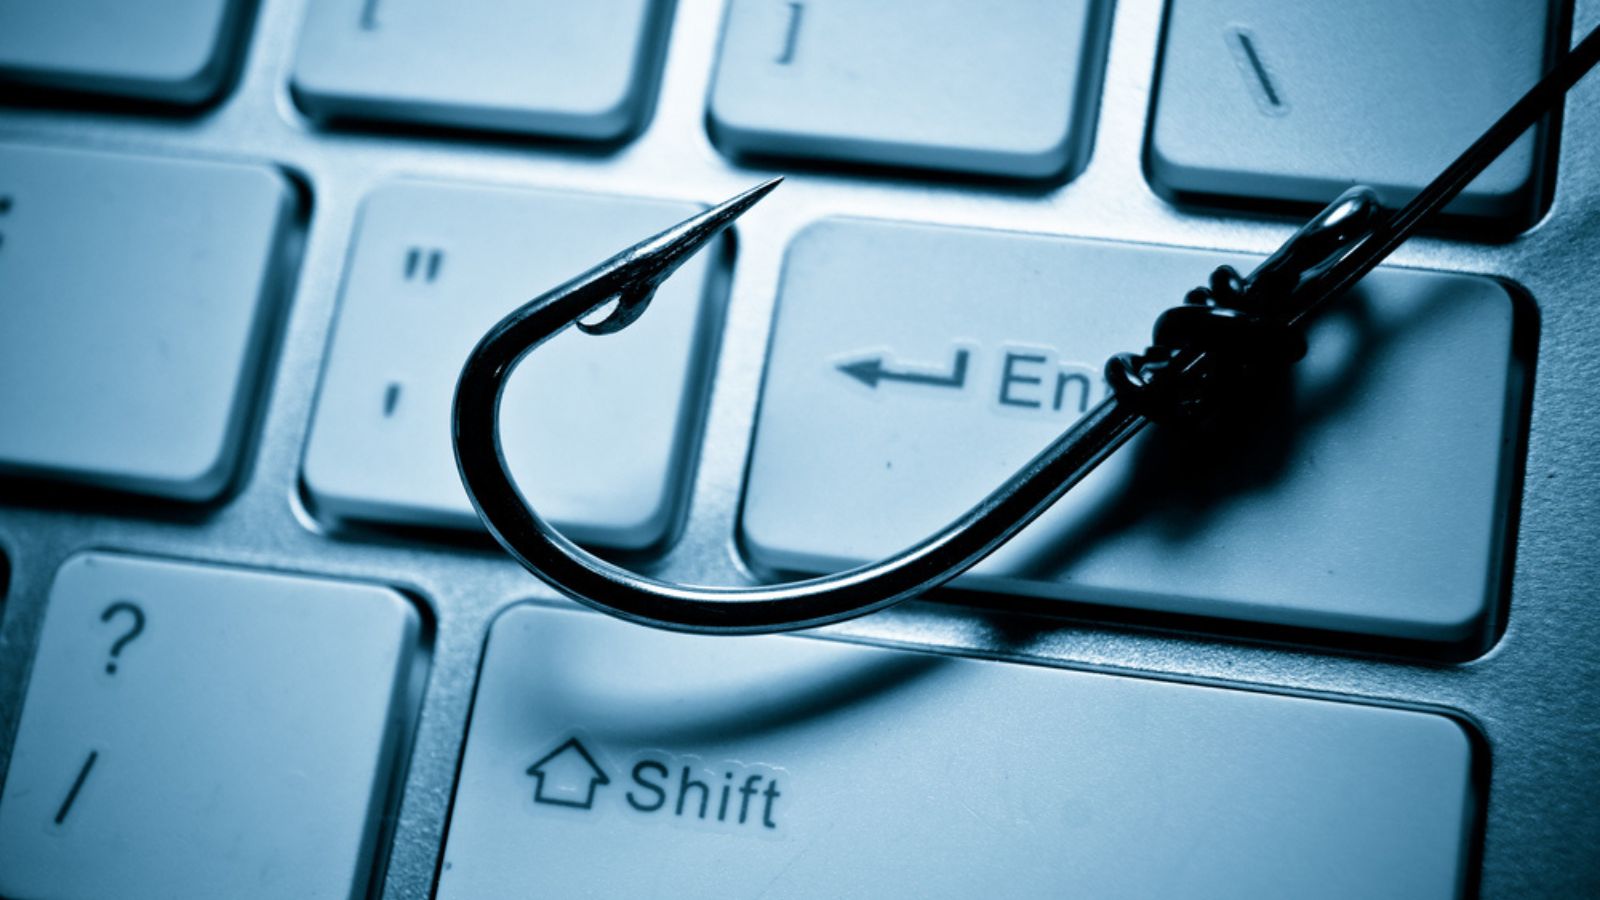 Pericoli del web, TRUFFA tramite mail: utenti derubati dei loro RISPARMI